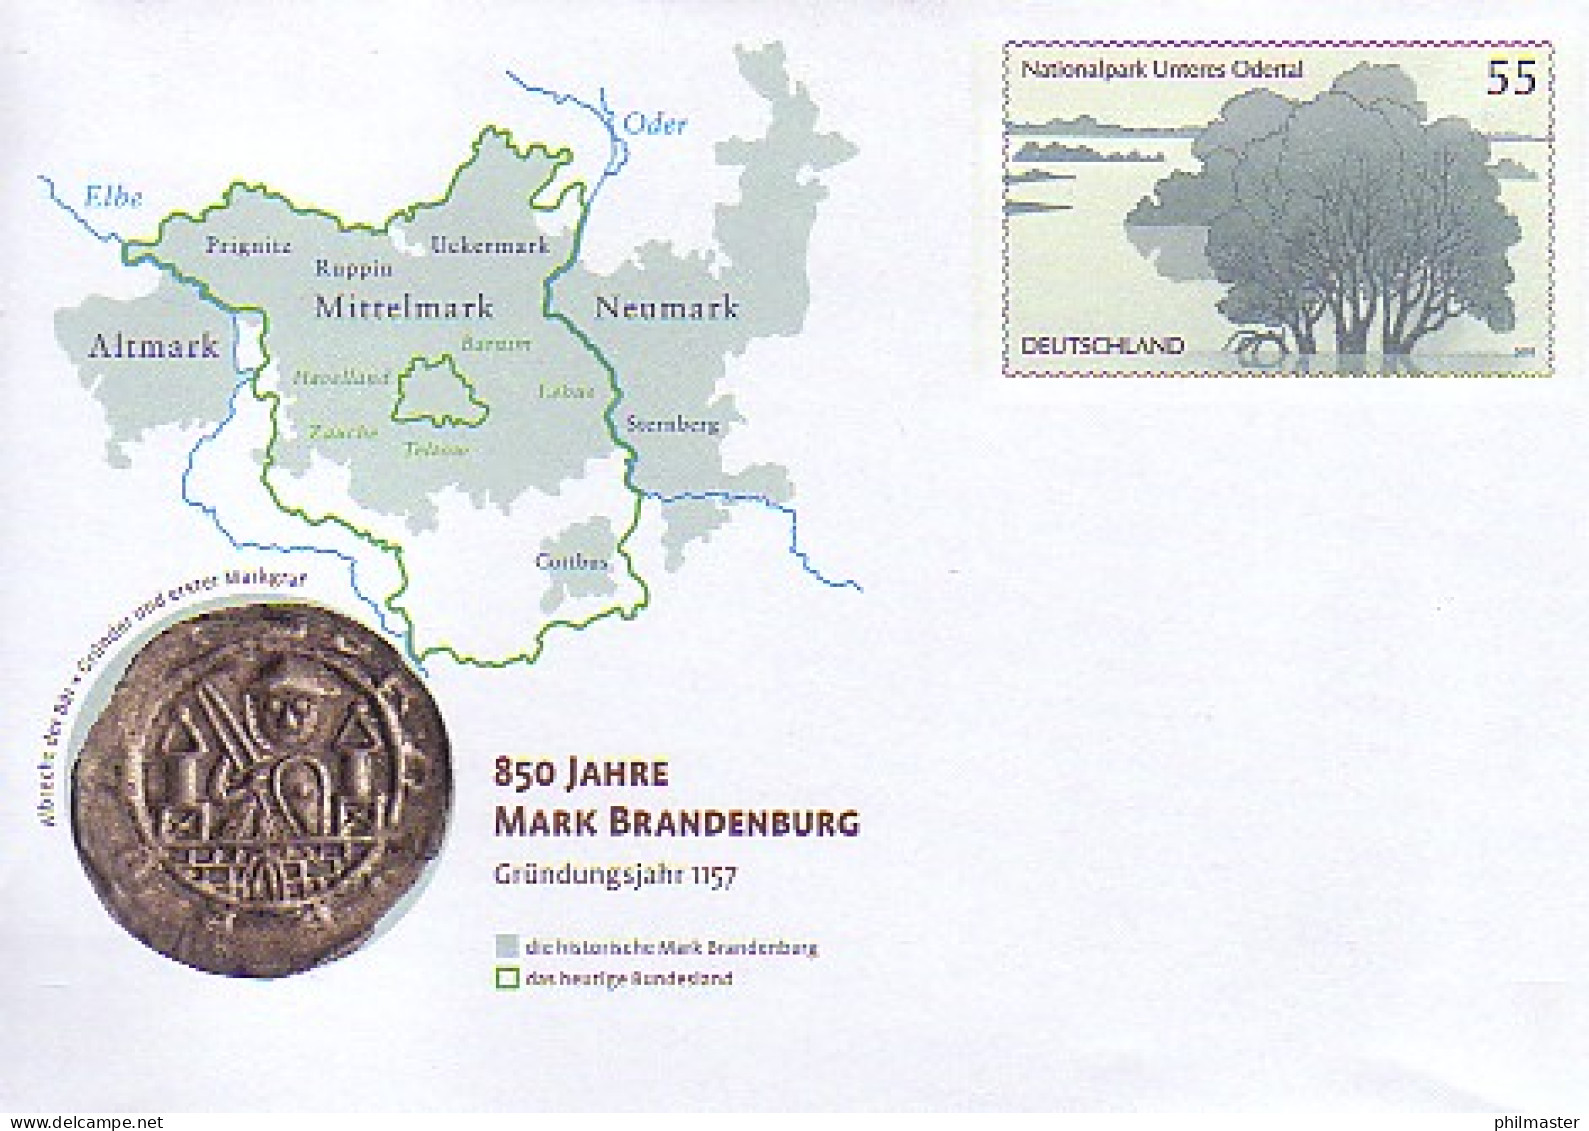 USo 135 Jubiläum 800 Jahre Mark Brandenburg - Nationalpark 2007, ** - Umschläge - Ungebraucht